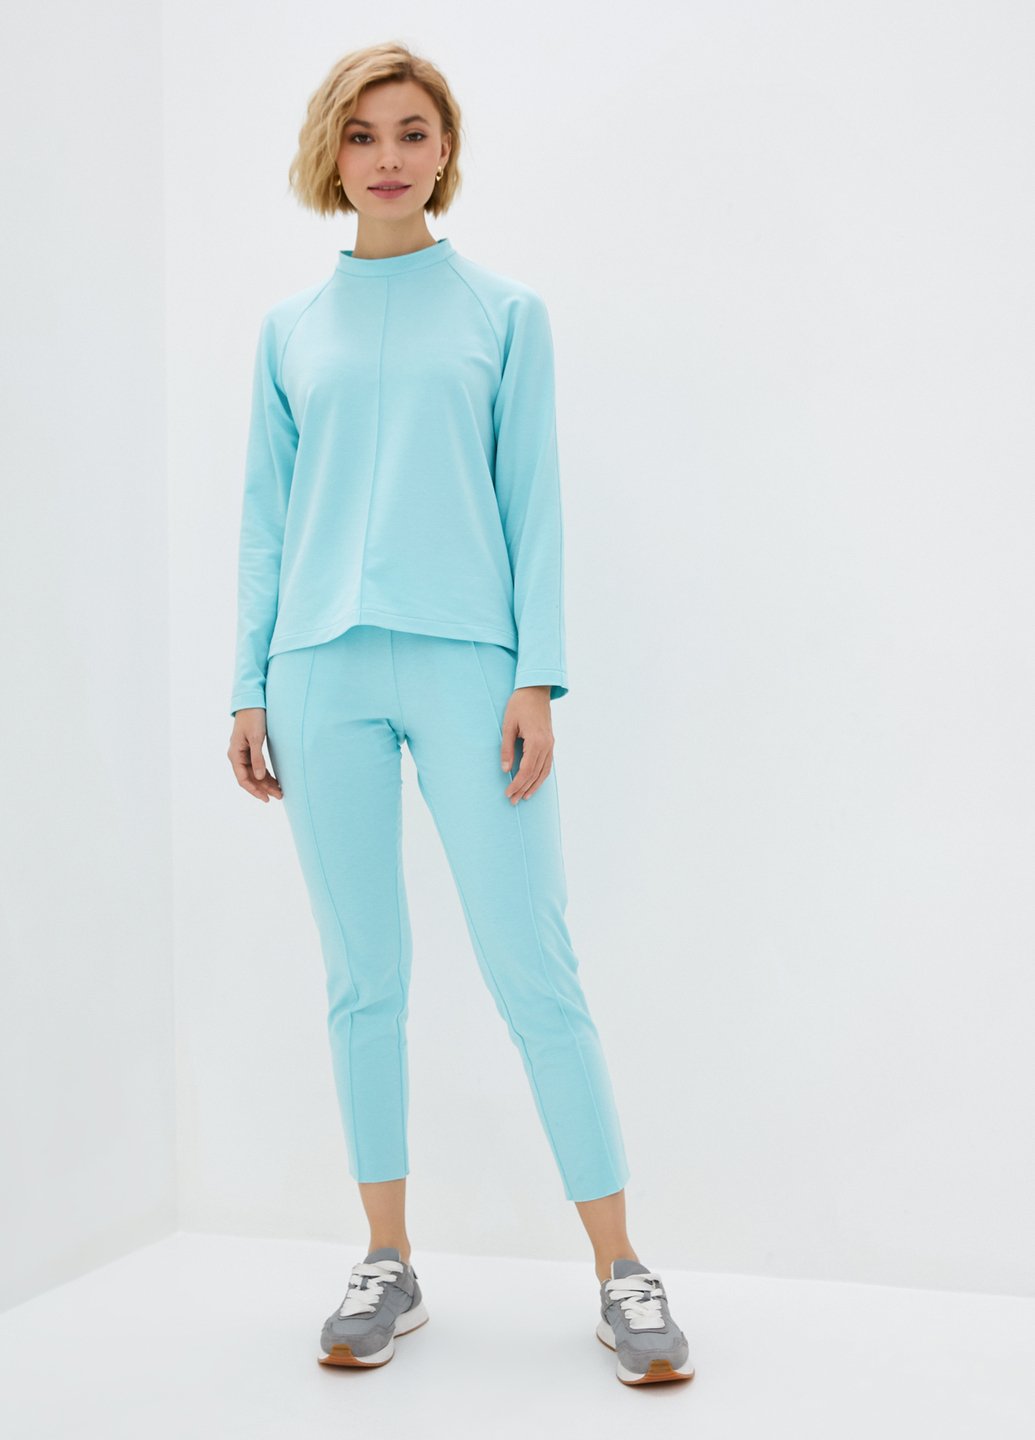 Купить Летний костюм женский голубого цвета Merlini Питерборо 100000082, размер 42-44 в интернет-магазине